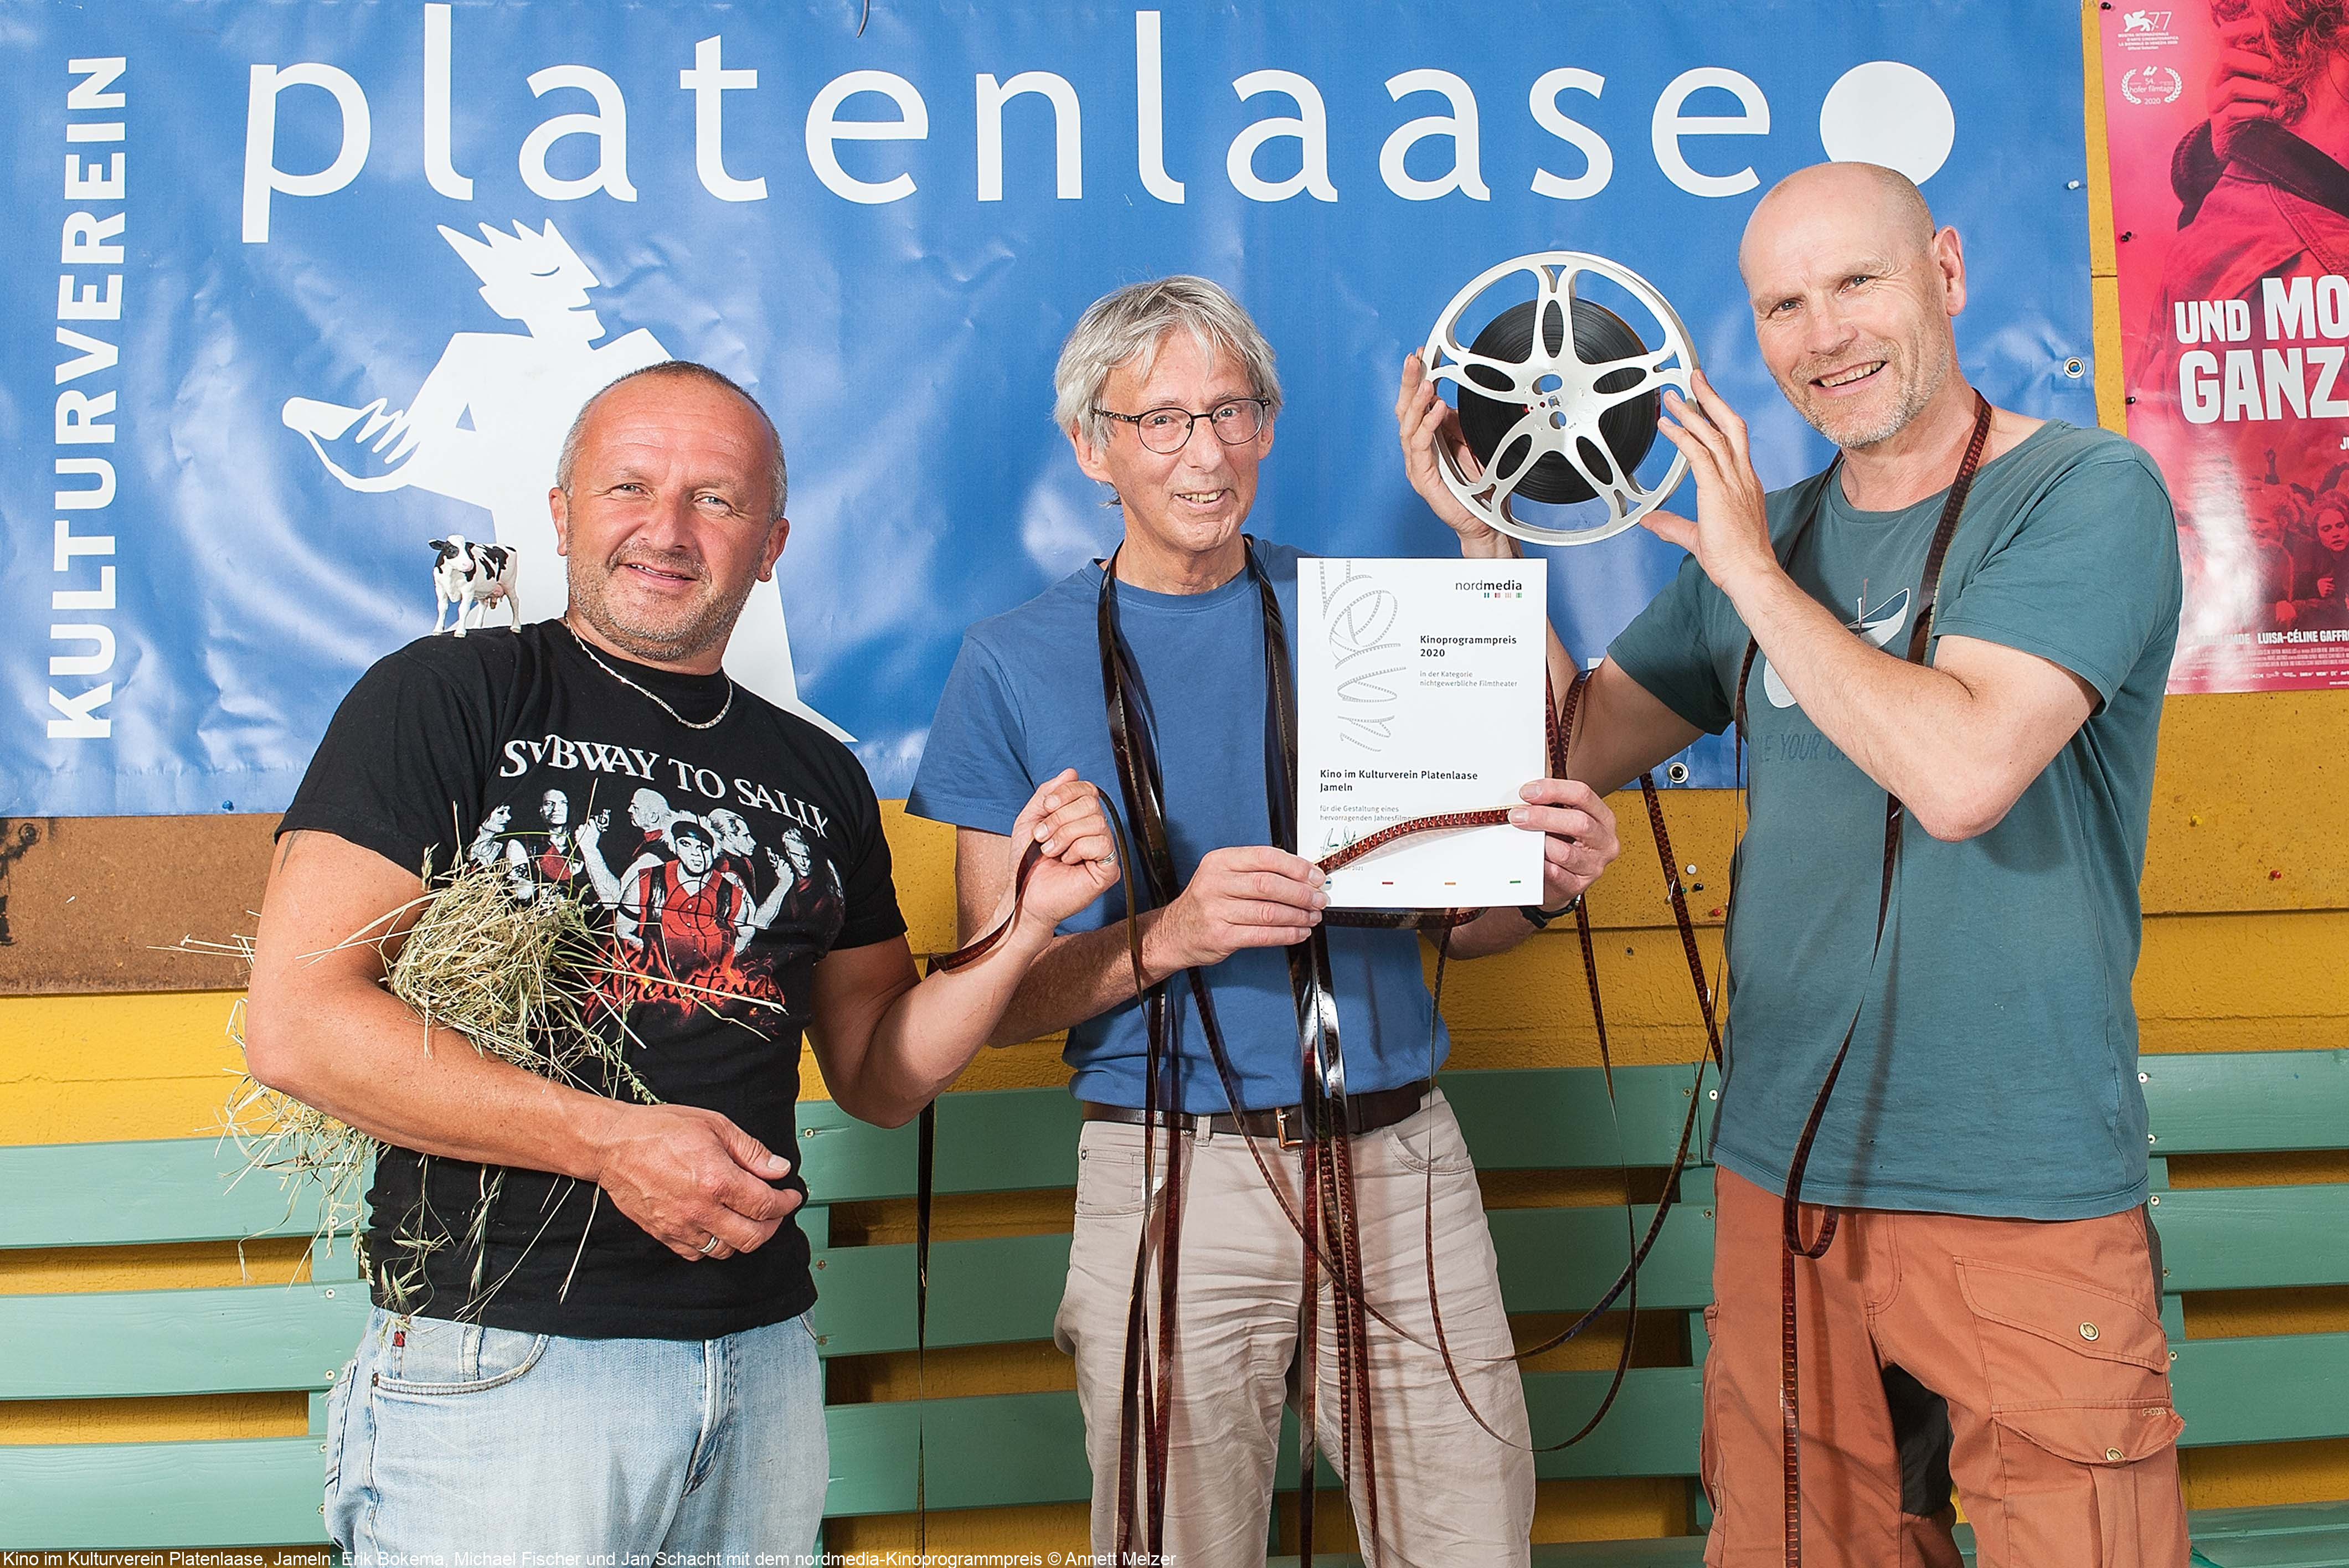 Kino im Kulturverein Platenlaase, Jameln: Erik Bokema, Michael Fischer und Jan Schacht mit dem nordmedia-Kinoprogrammpreis © Annett Melzer